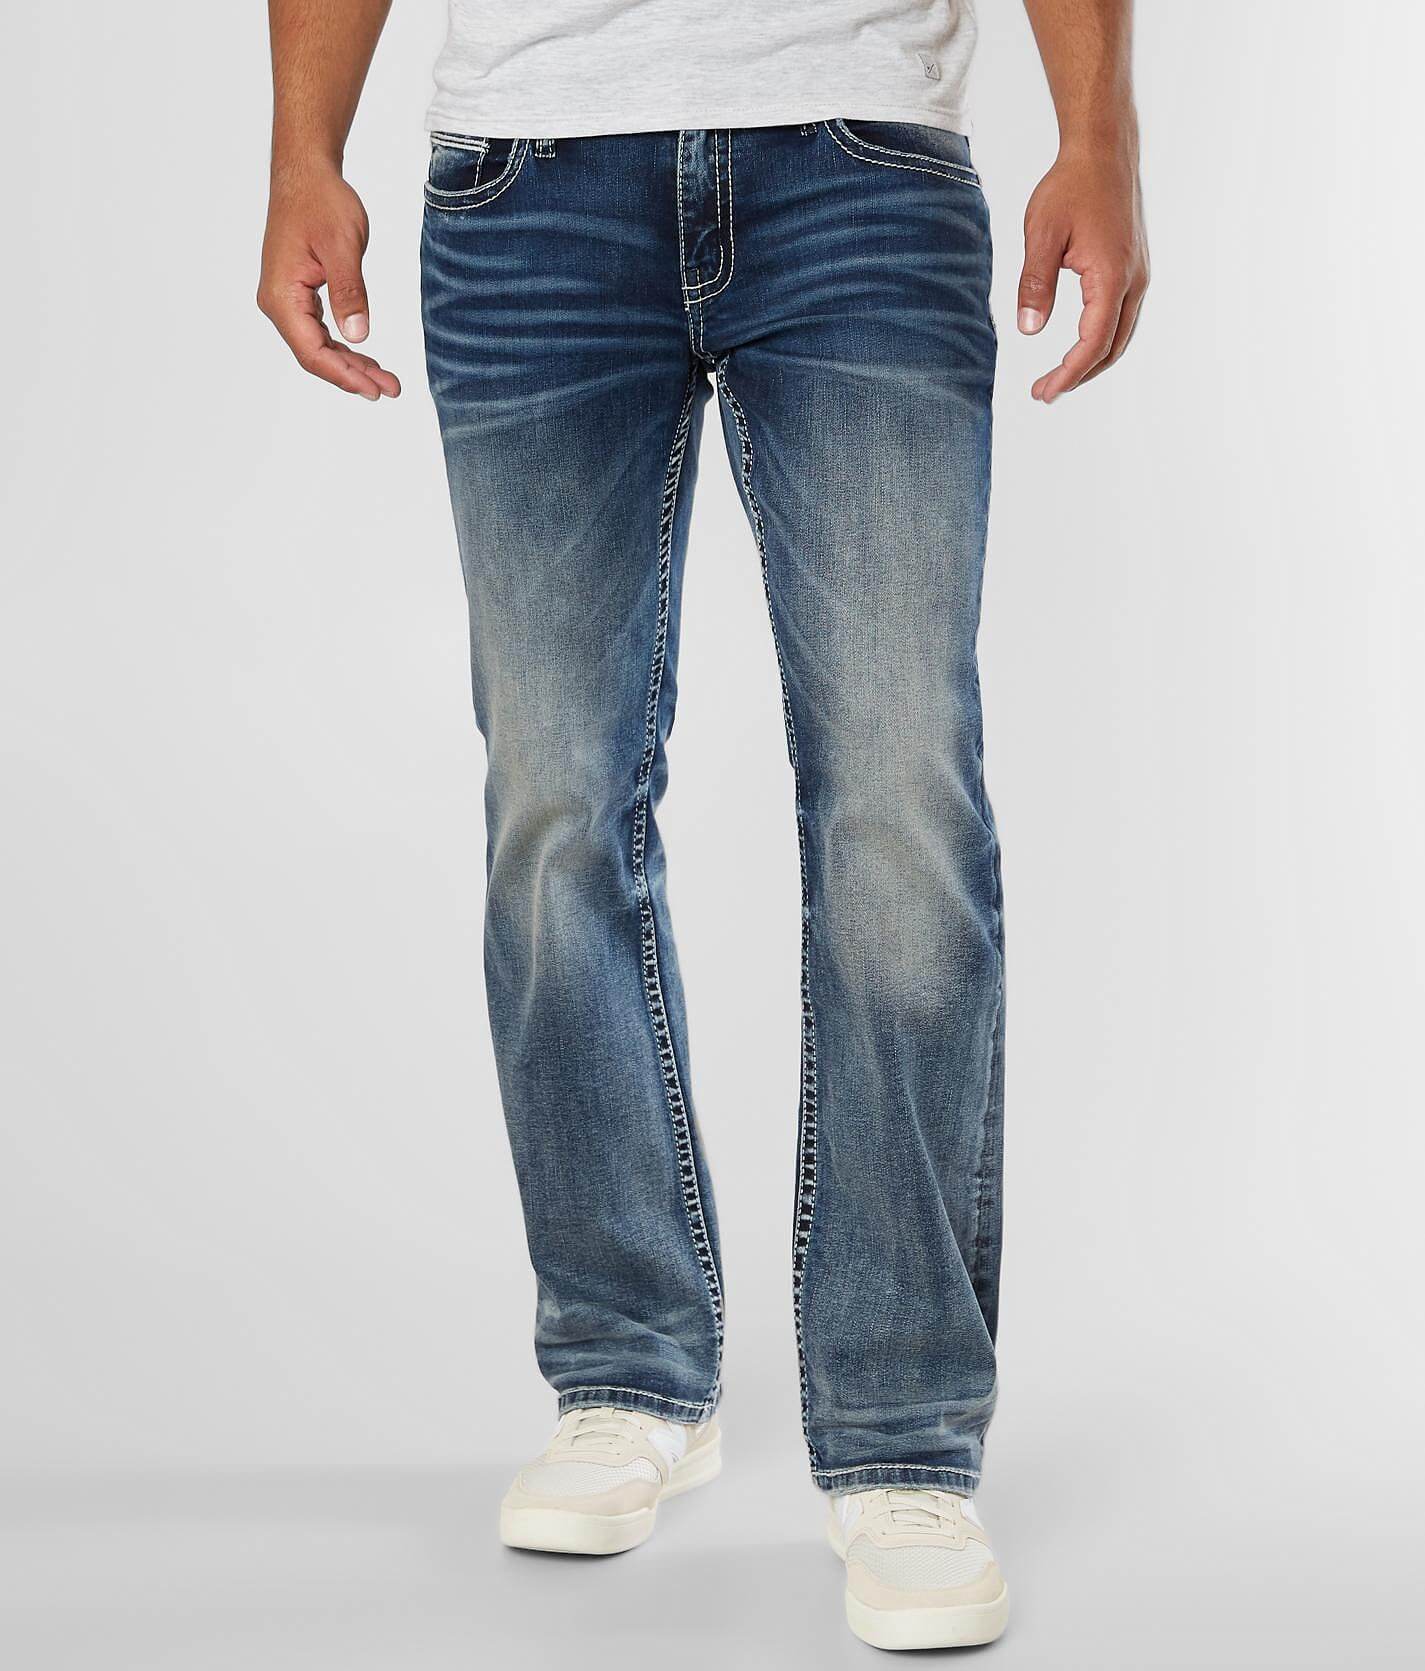 bke carter men's jeans